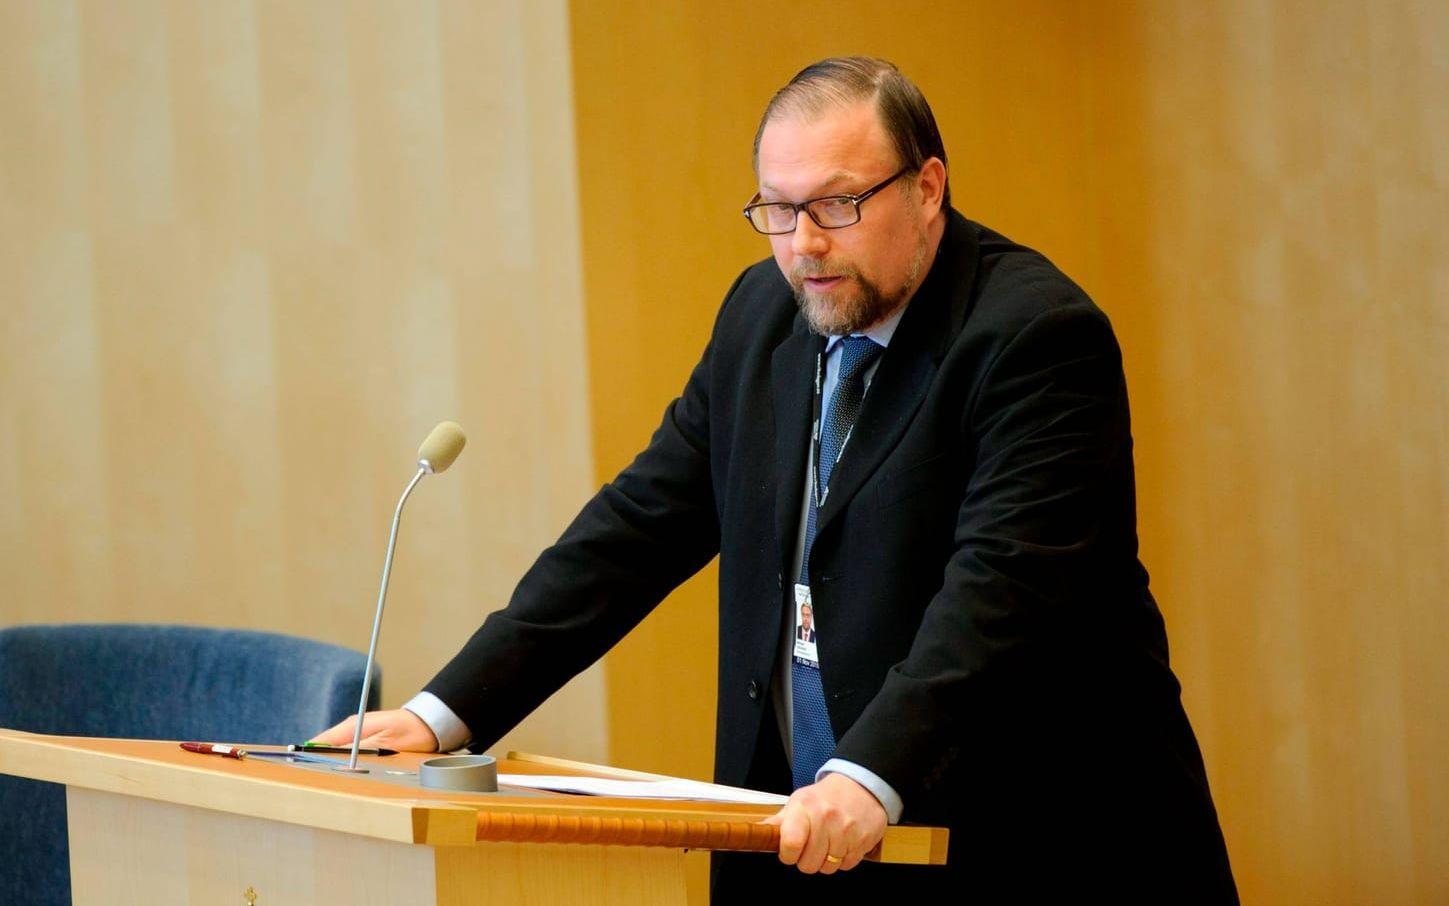 En av utmanarna är Mikael Jansson, före detta partiledare för Sverigedemokraterna. Bild: Scanpix